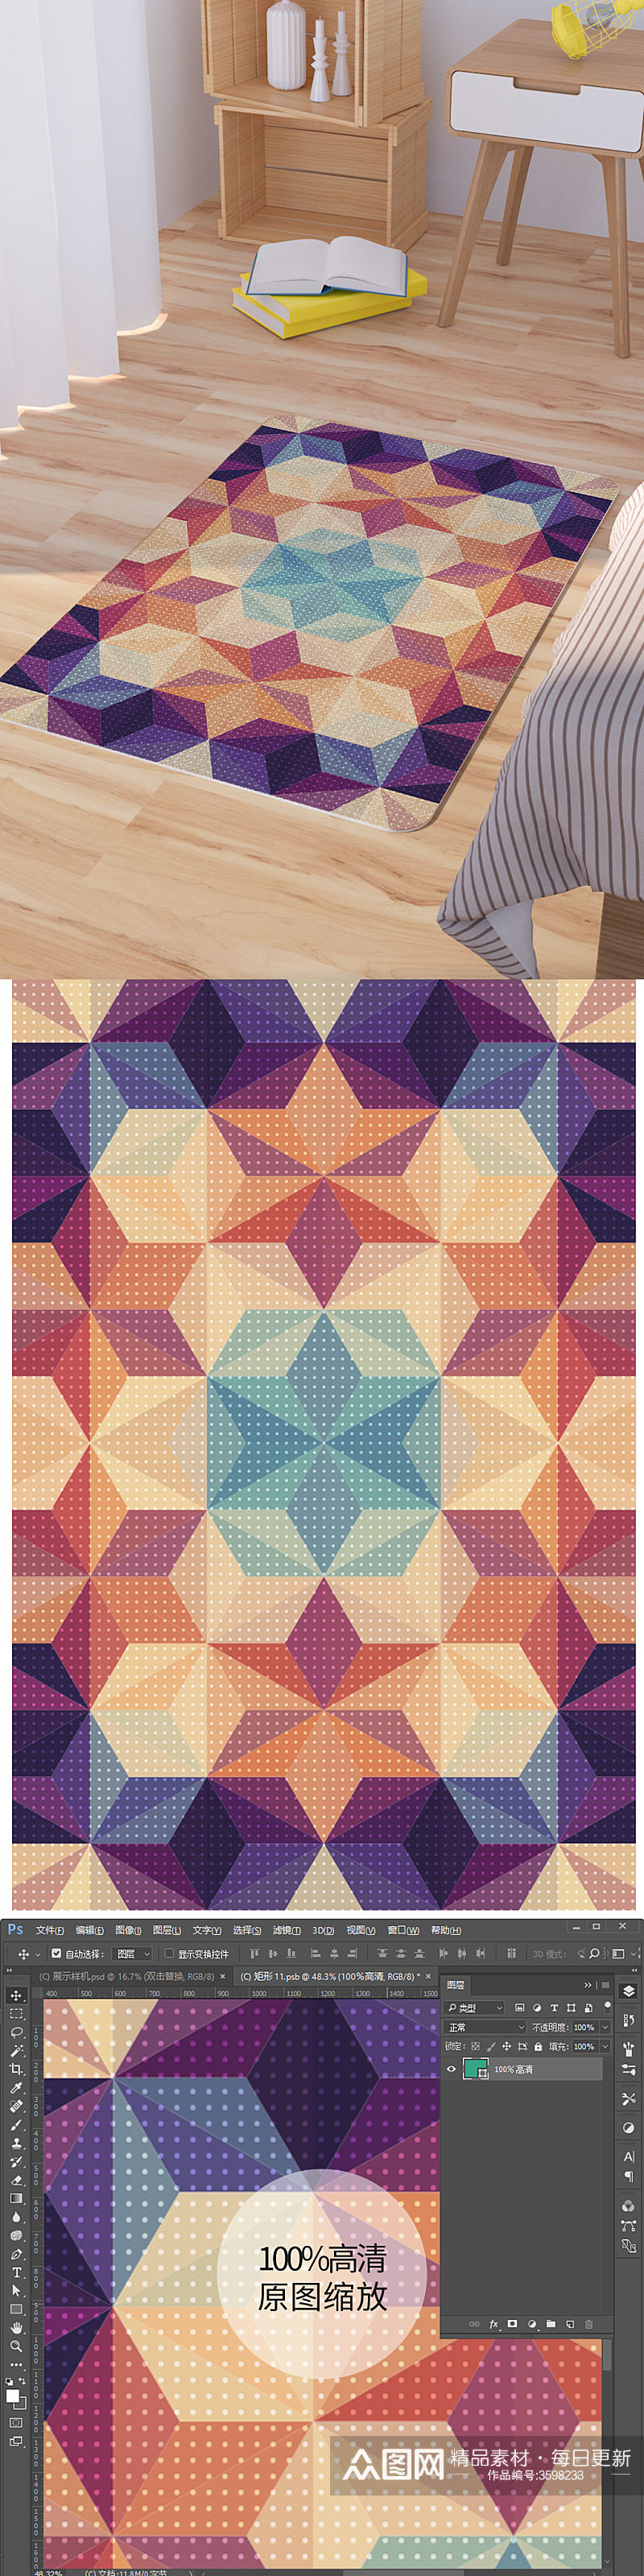 现代几何菱格矢量脚垫地毯图案素材